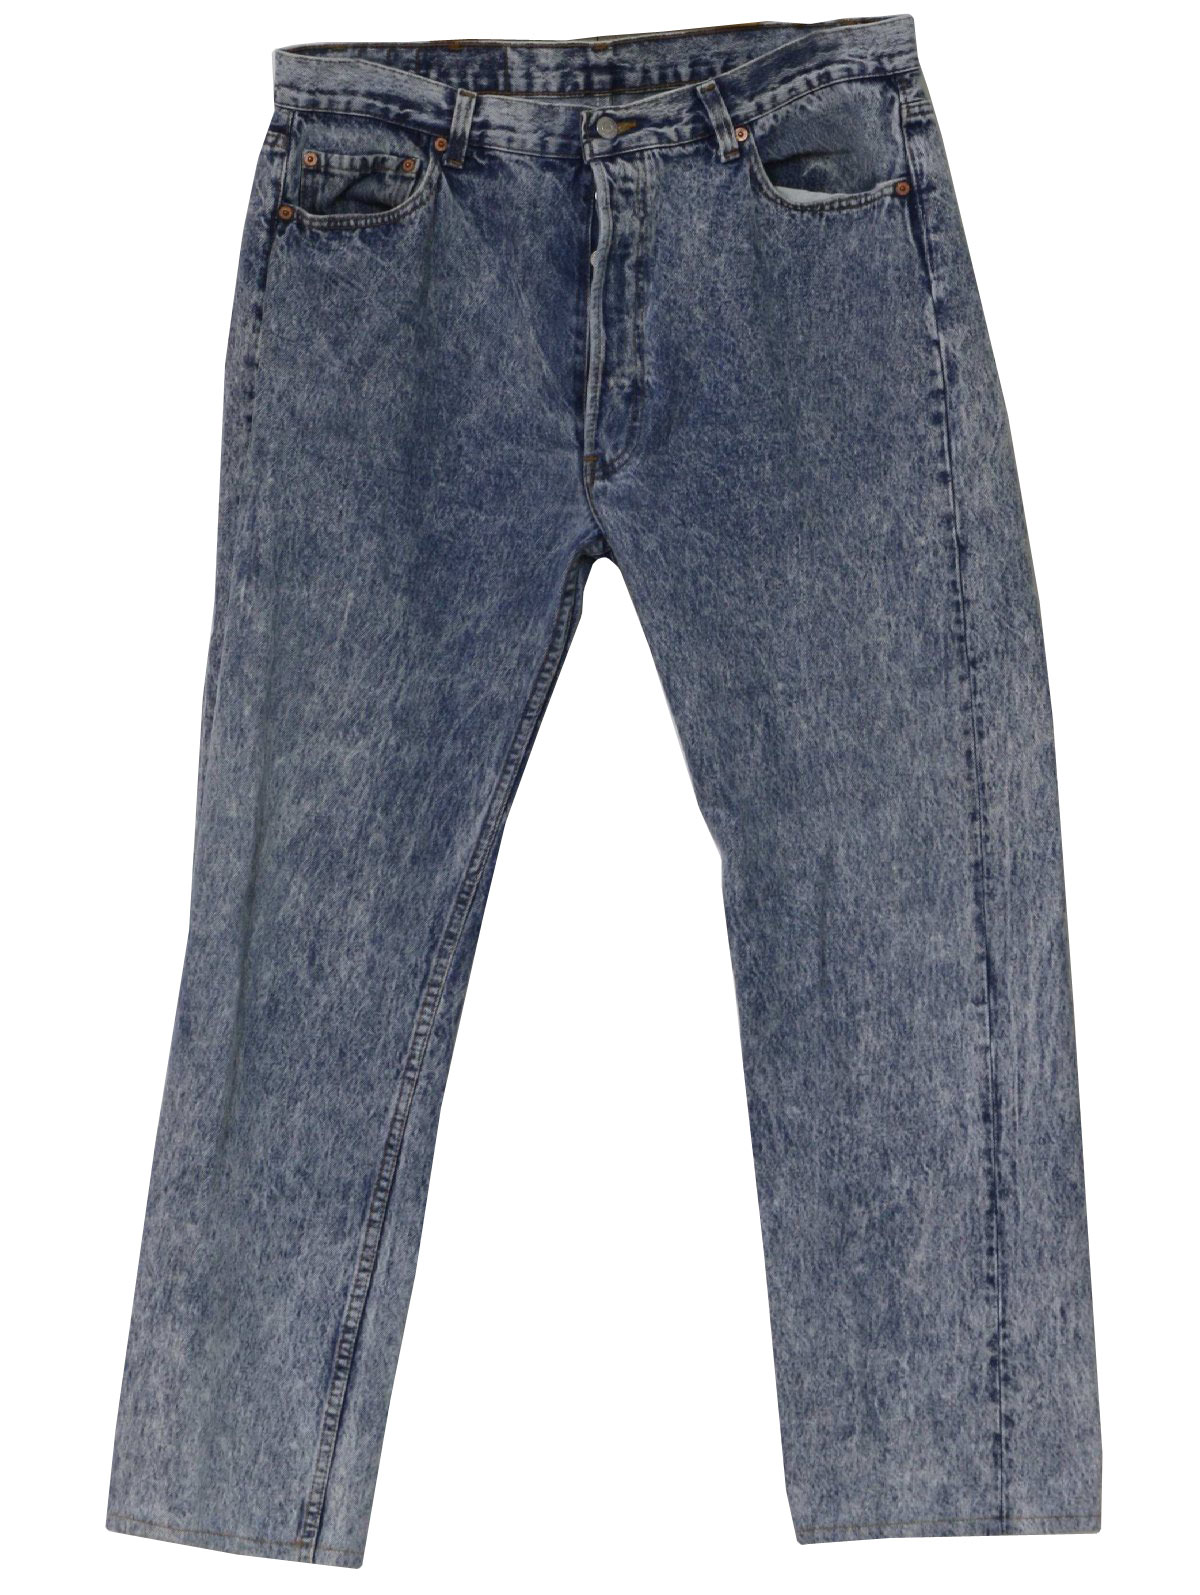 1980s Vintage Pants: 80s -Levis- Mens blue cotton denim acid wash jeans ...